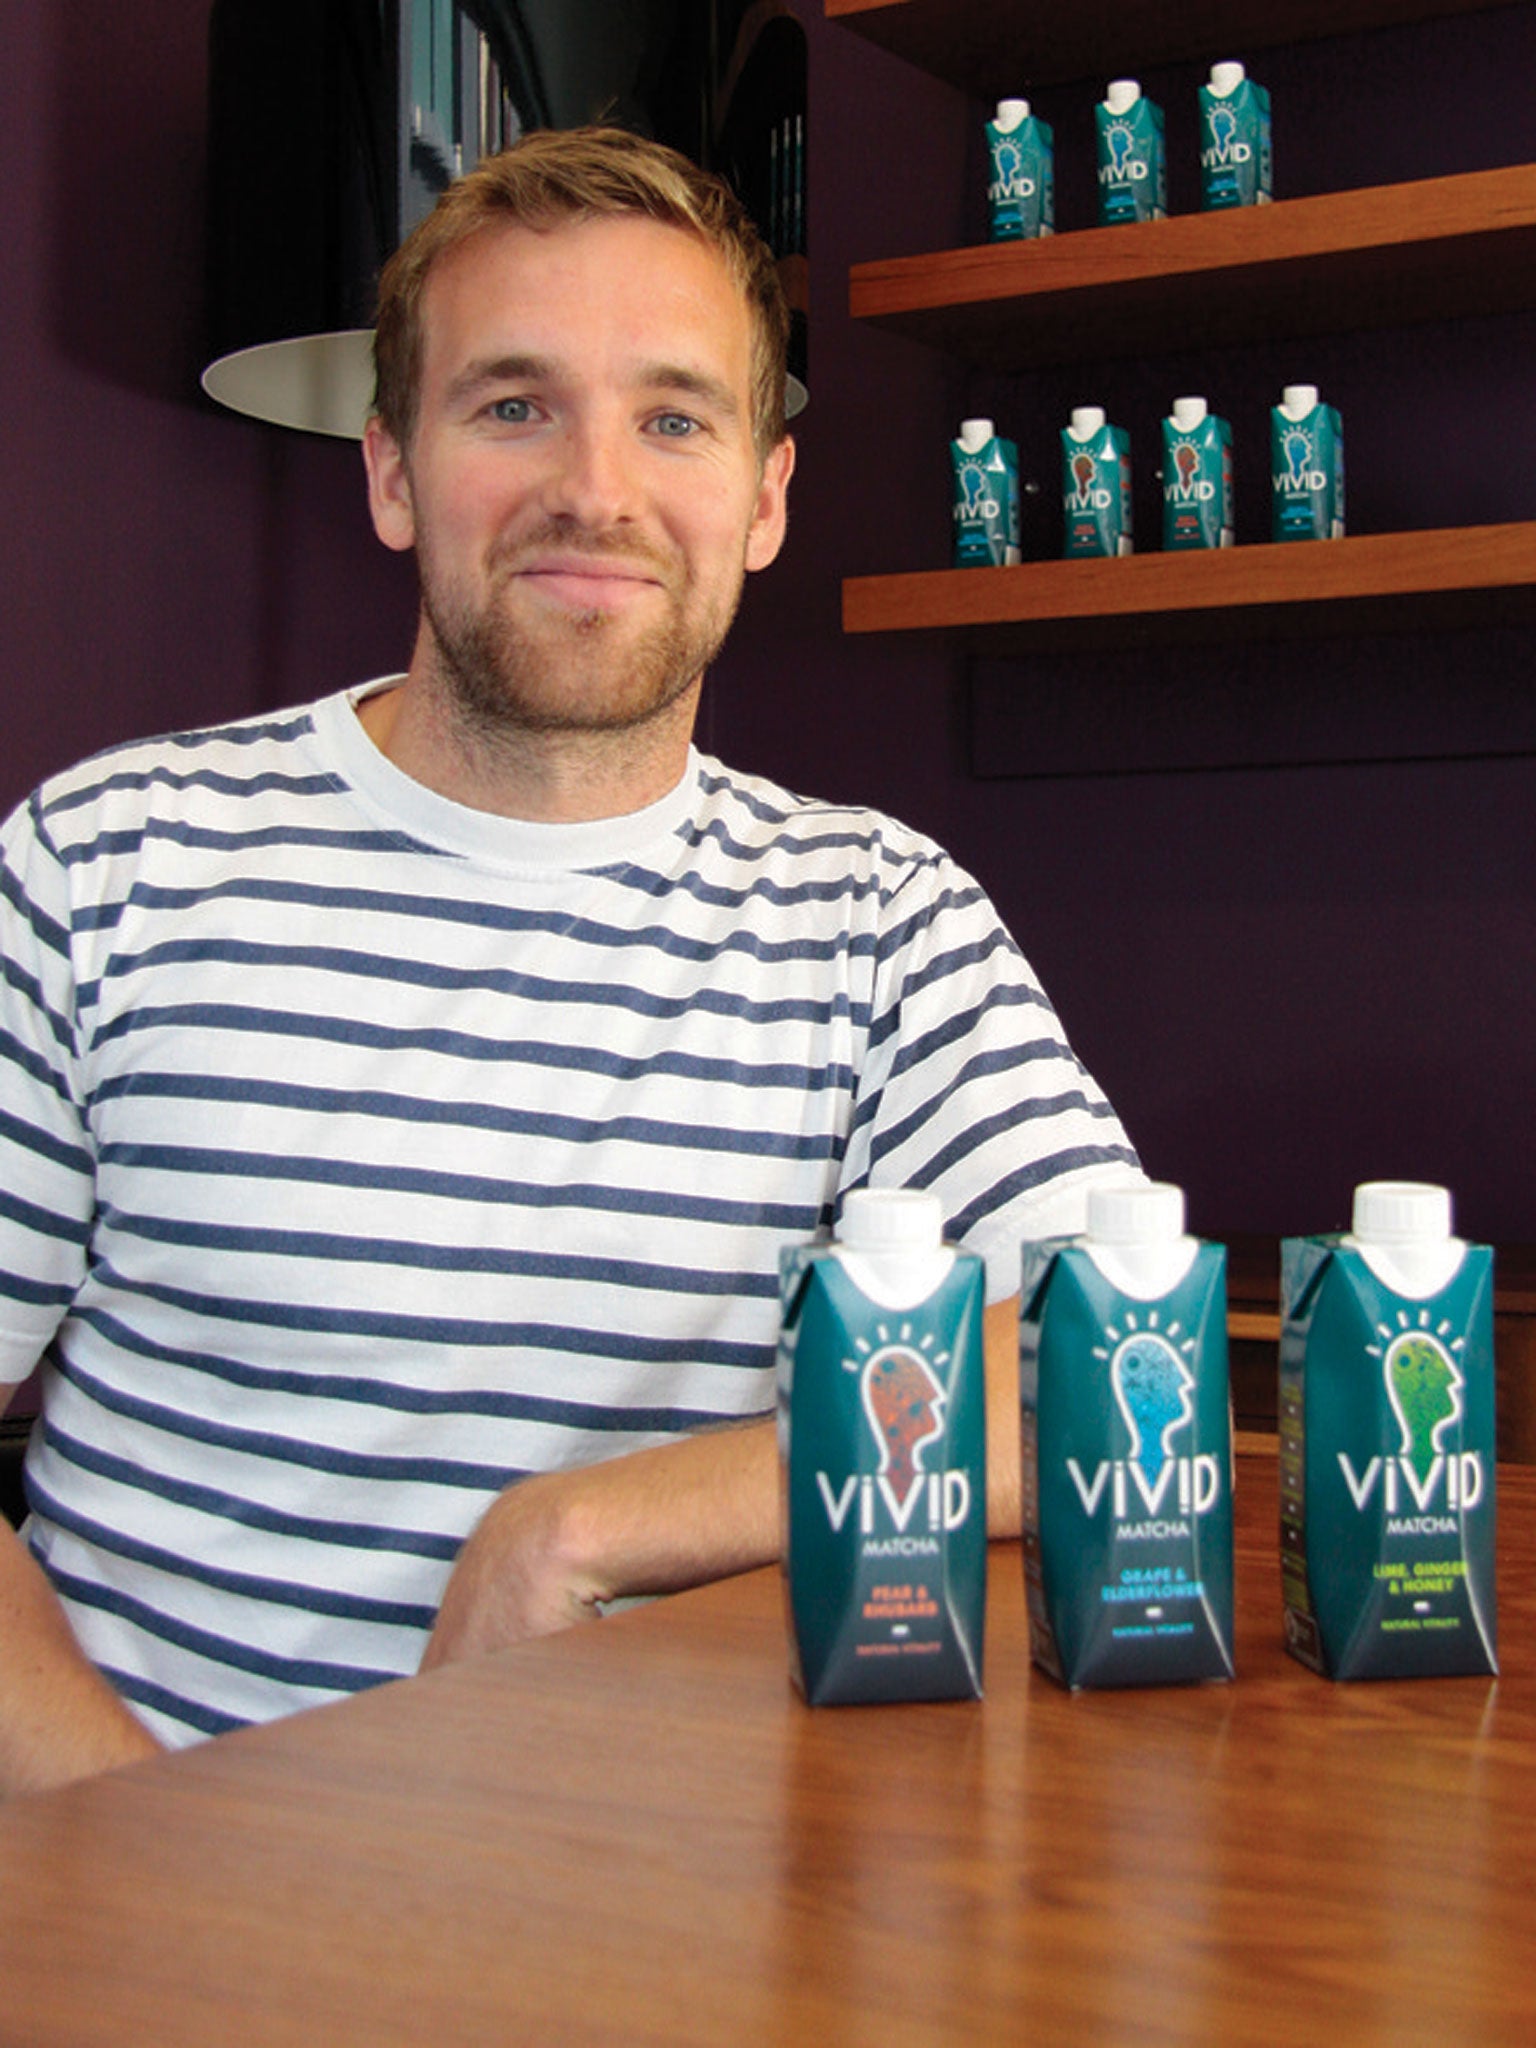 James Shillcock, who produces the matcha drink Vivid (Alamy)